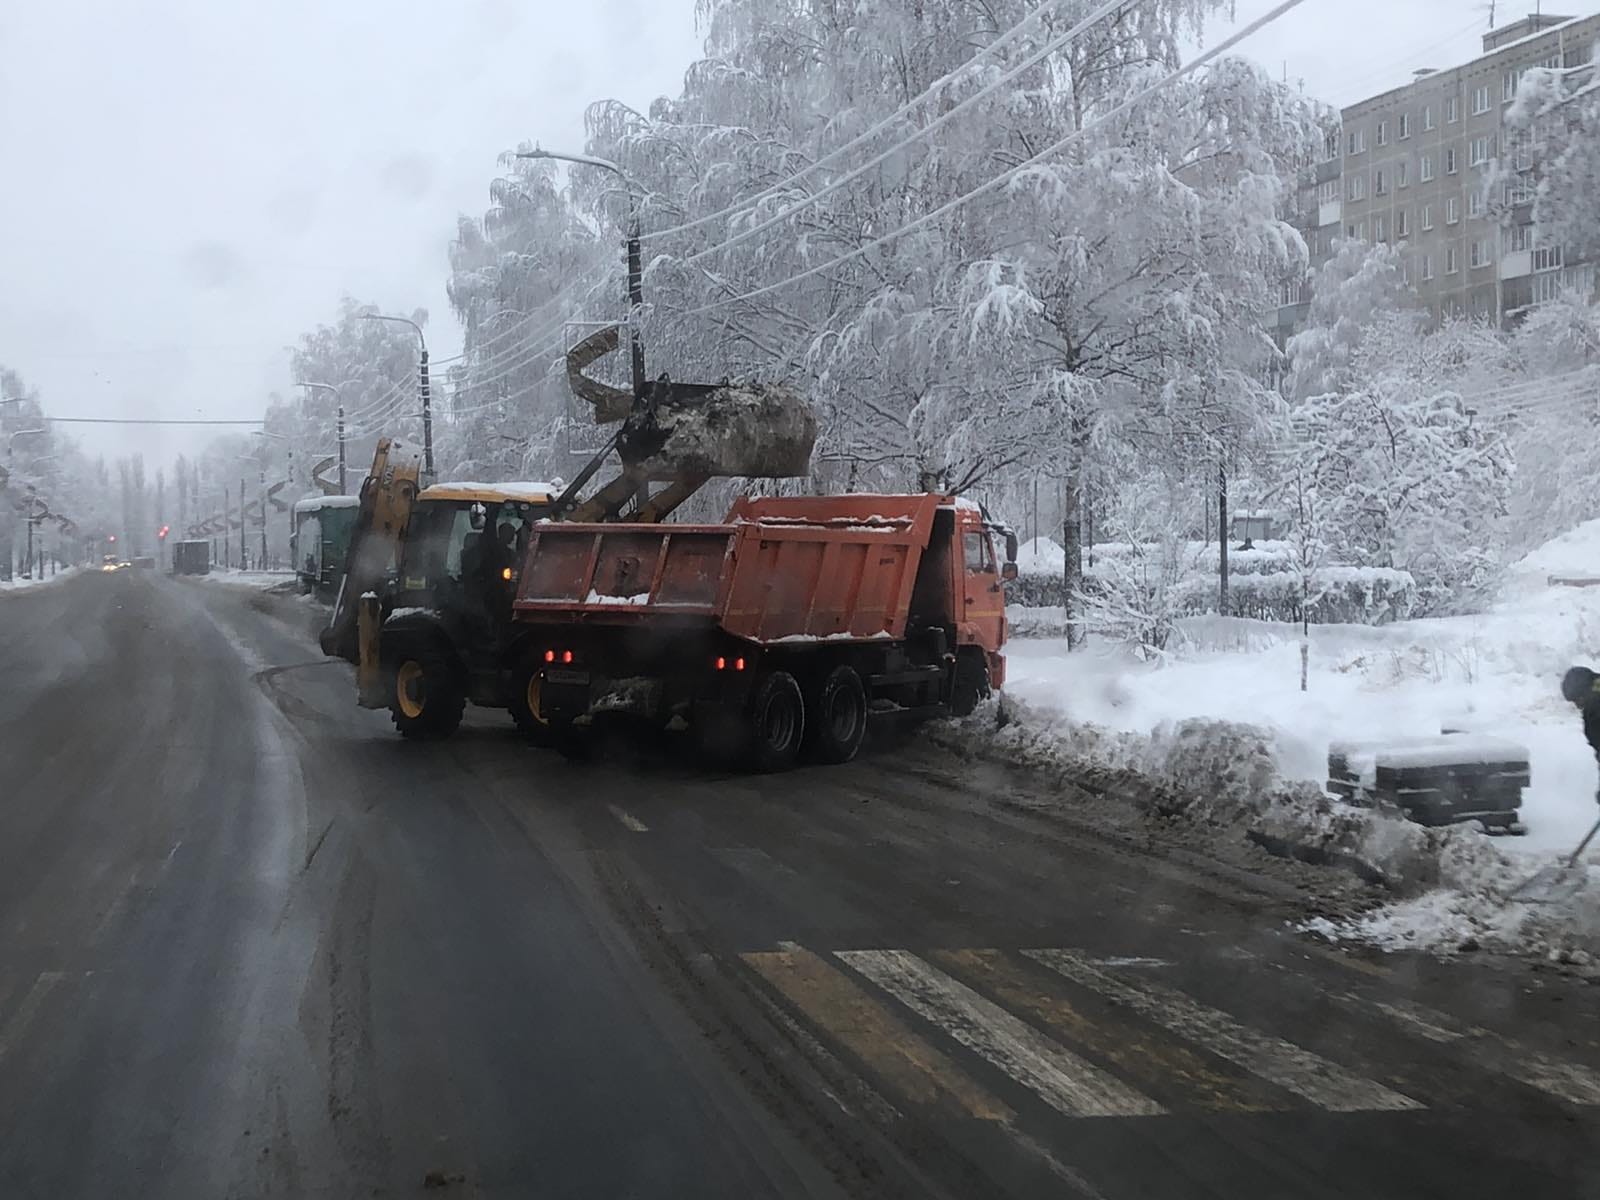  114 % от нормы осадков выпало в Нижнем Новгороде с начала декабря - фото 1